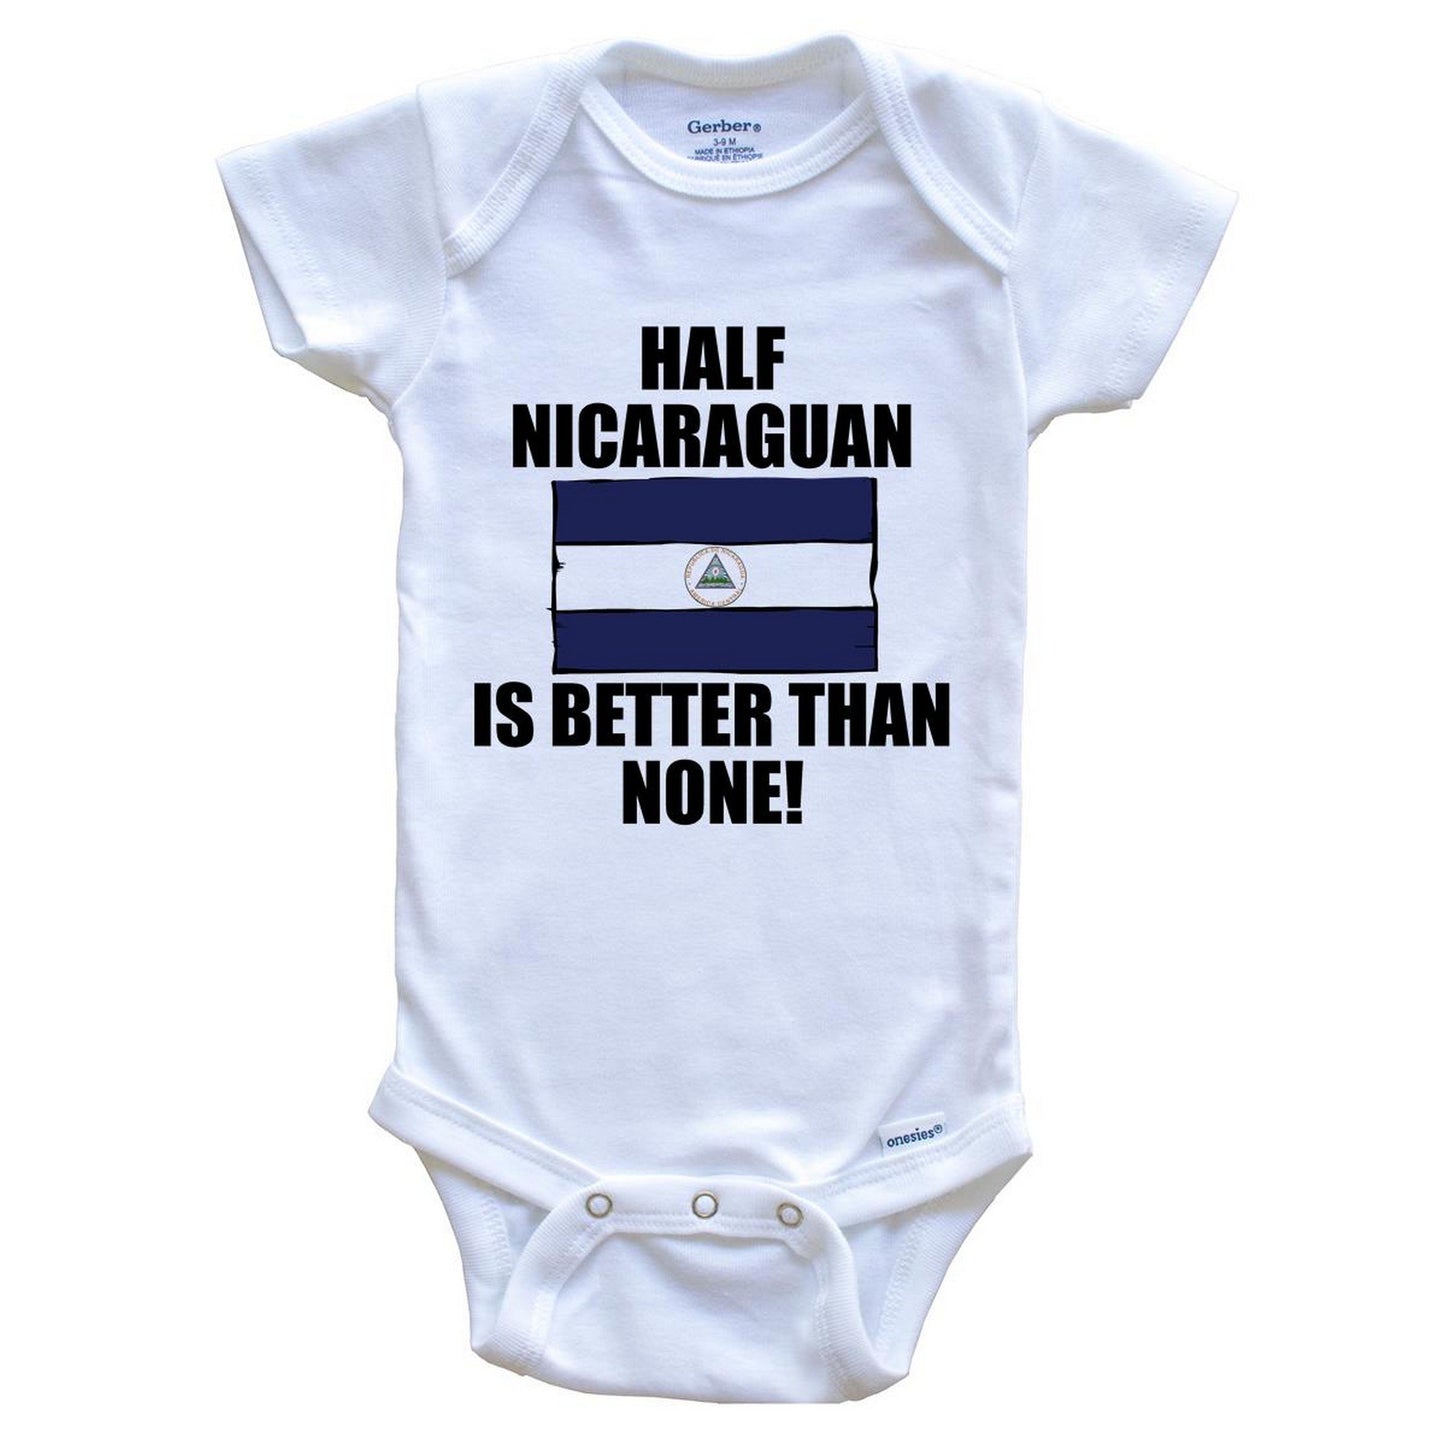 Half Nicaraguan Is Better Than None Baby Onesie